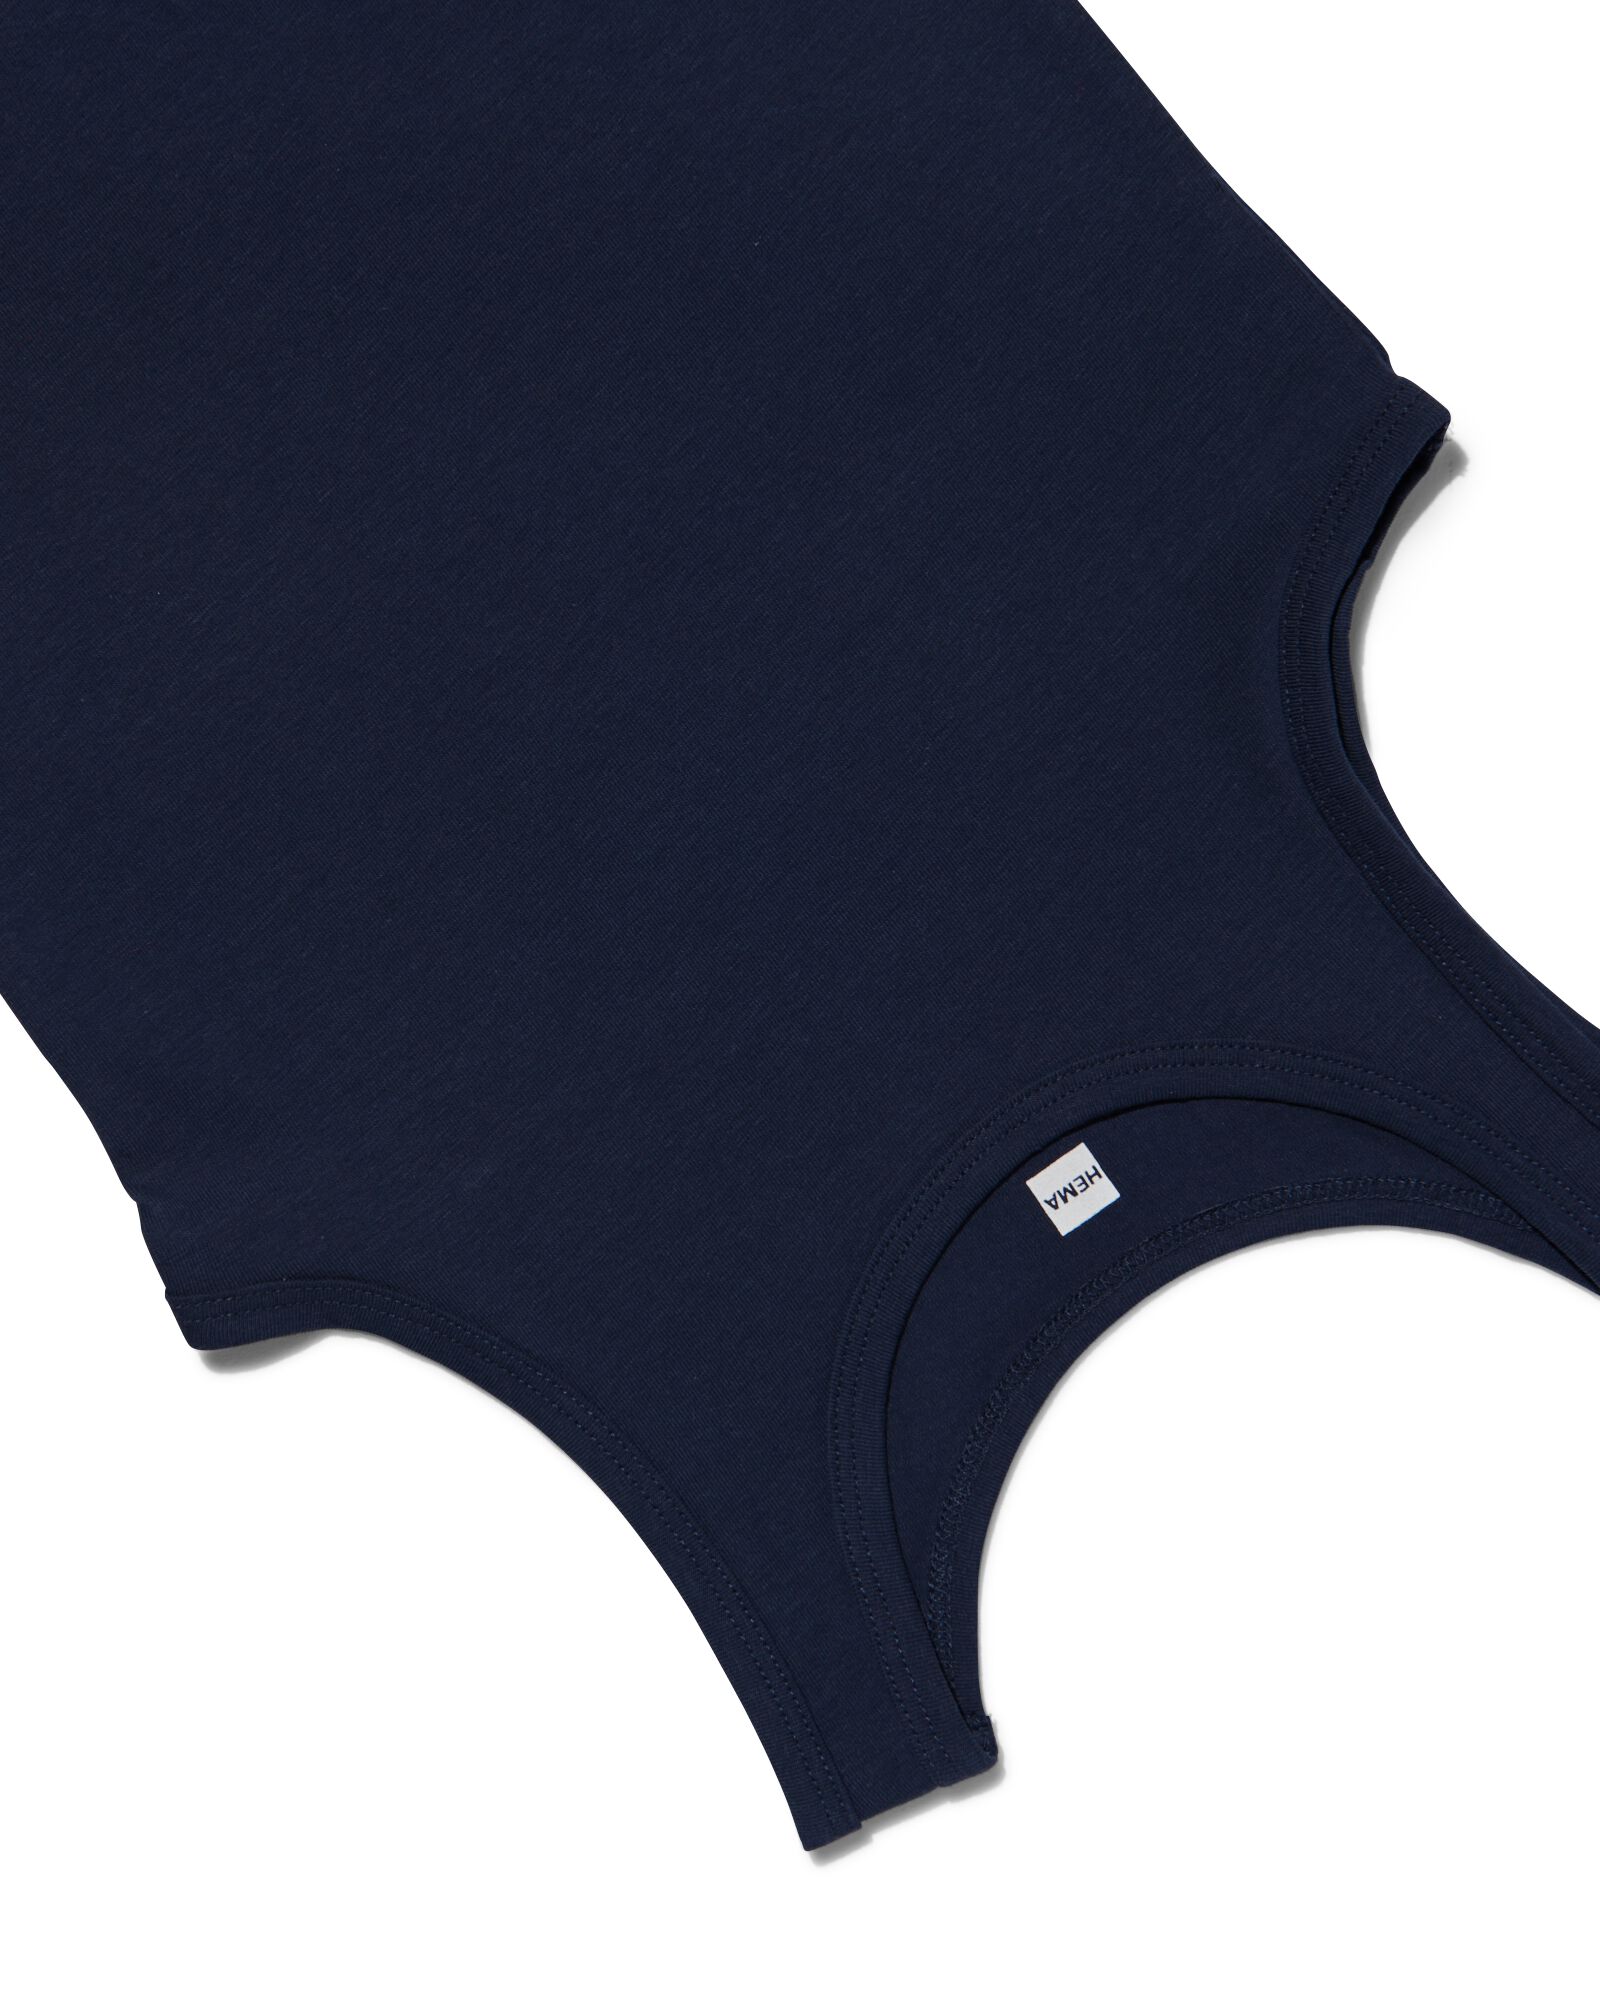 kinderhemden - 2 stuks donkerblauw 110/116 - 19280723 - HEMA